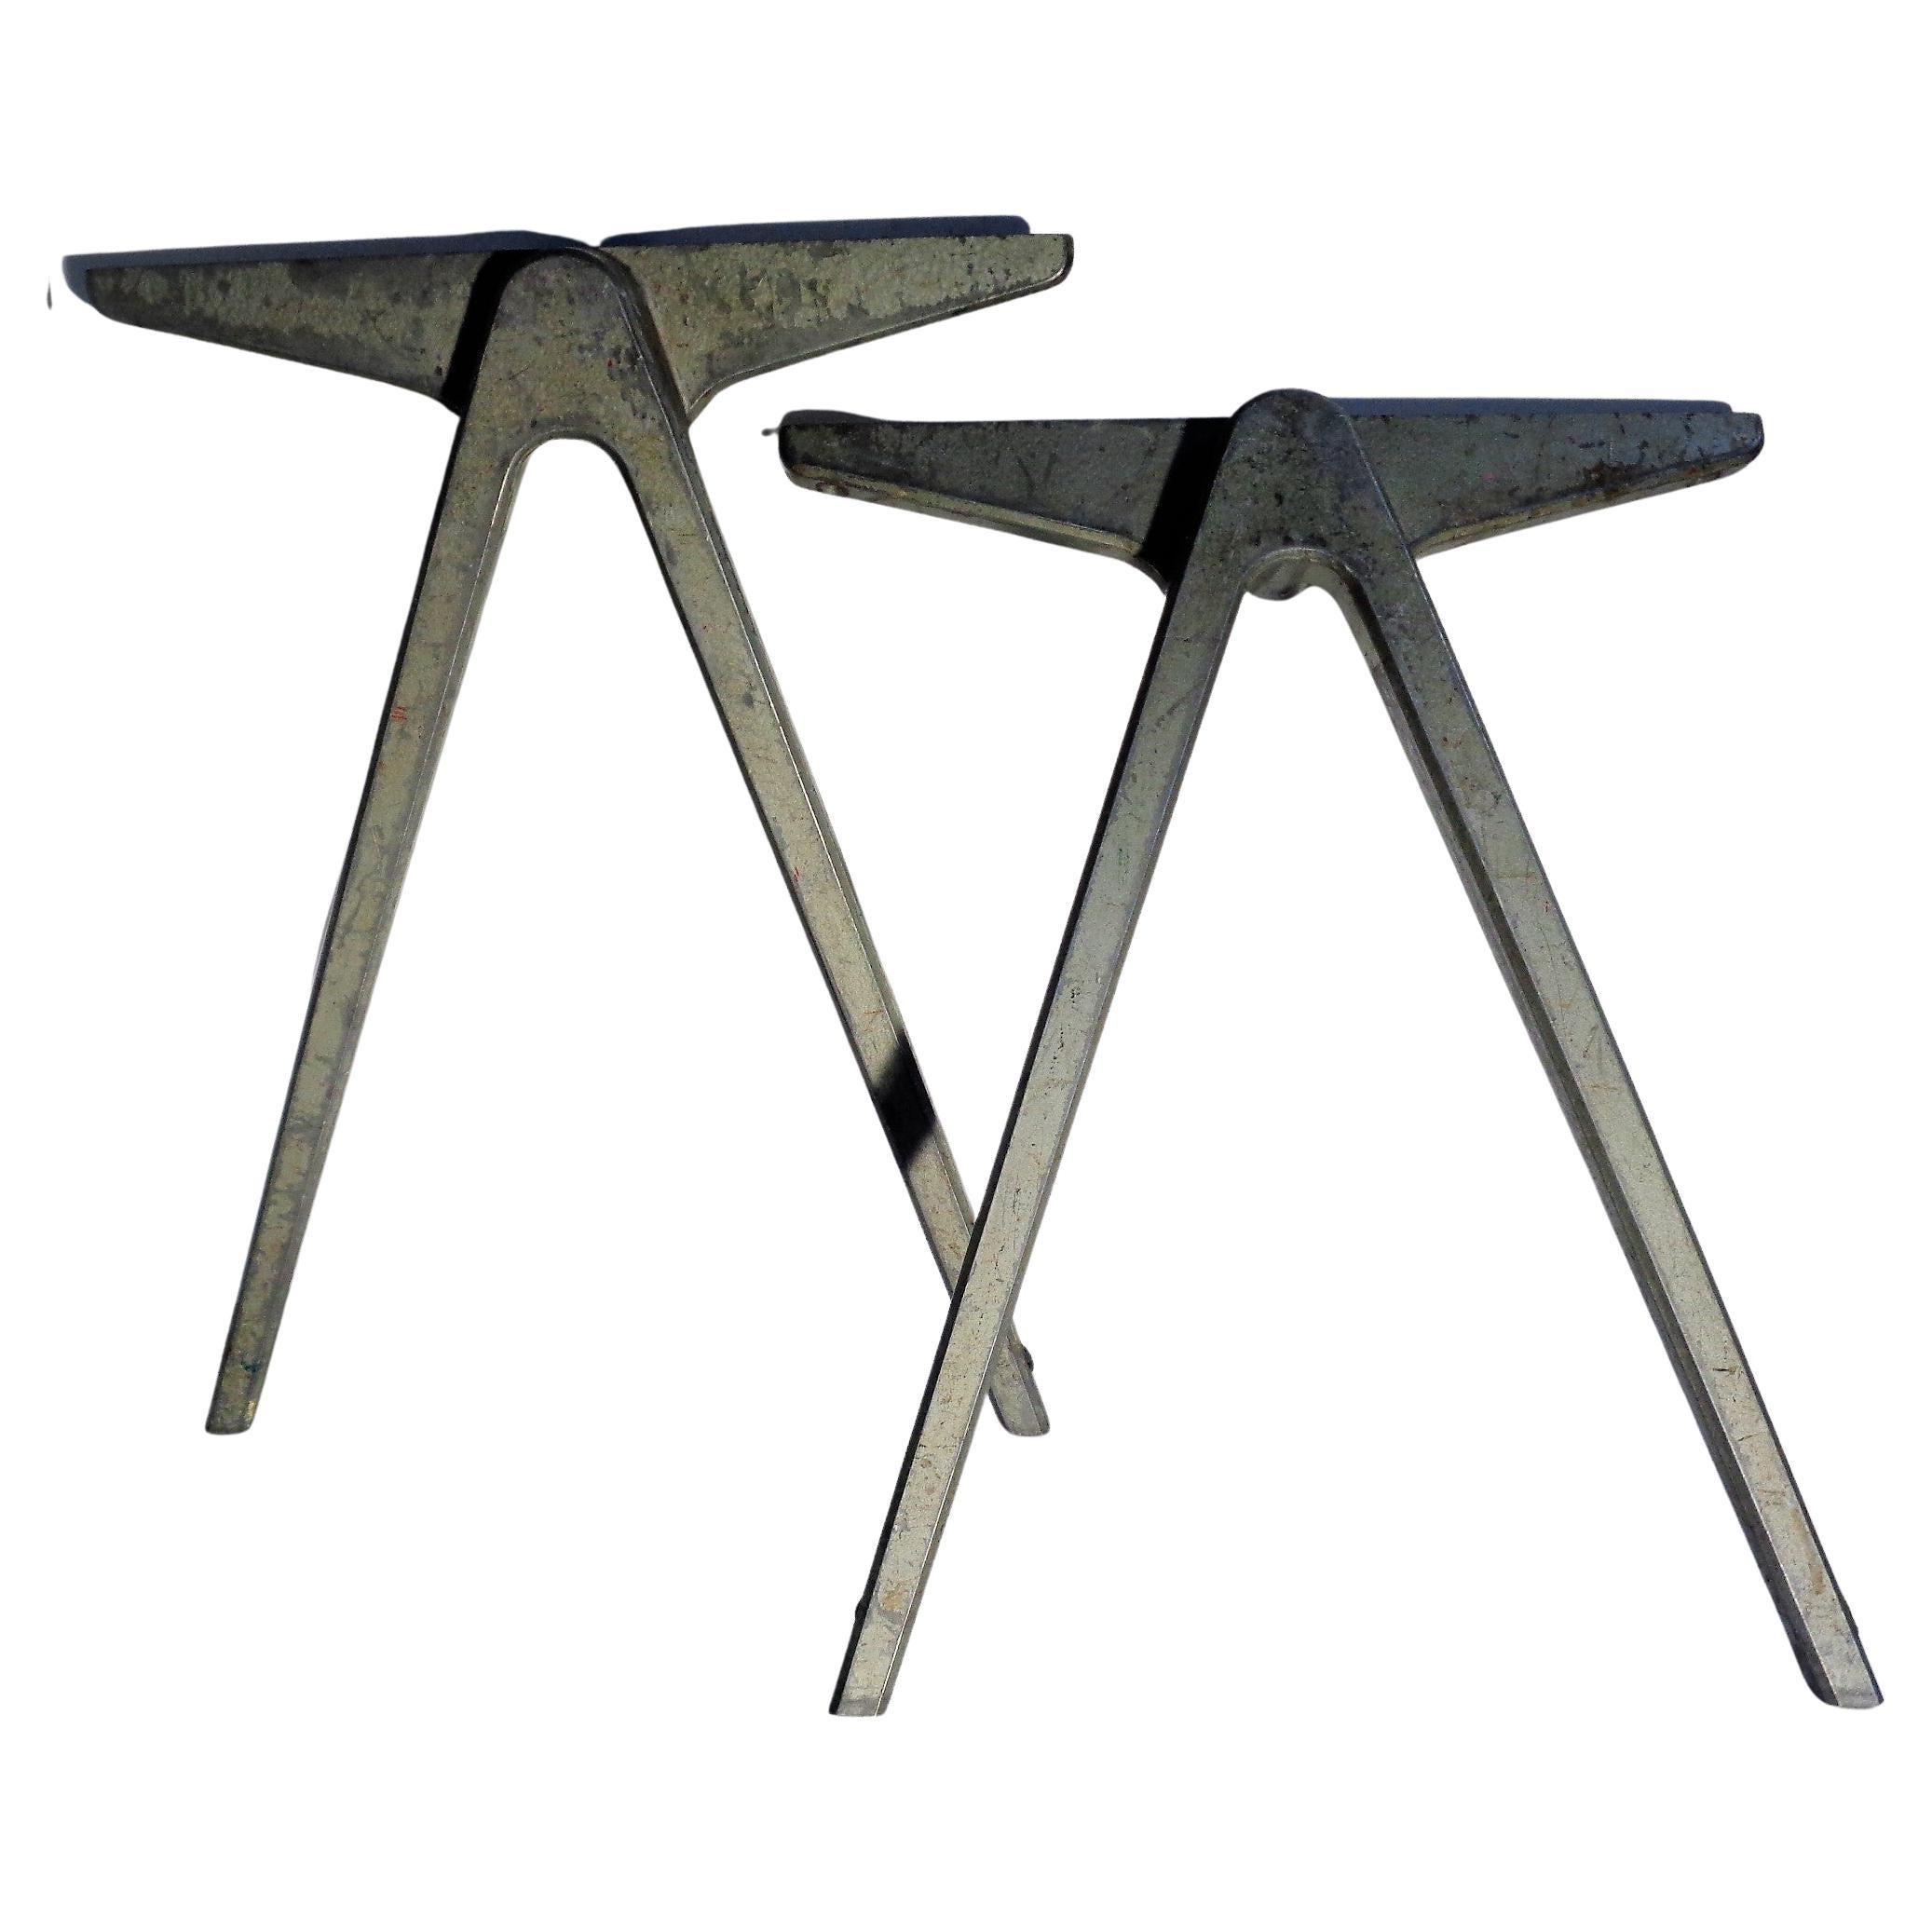 Ein Paar frühindustrieller modernistischer Aluminium-Tischbeine in Form eines Zirkels im Stil von Jean Prouve' von James Leonard für Esavian, England 1940. Dieser frühere Kompass-Entwurf von James Leonard für Esavian ging dem Prouve'-Entwurf des